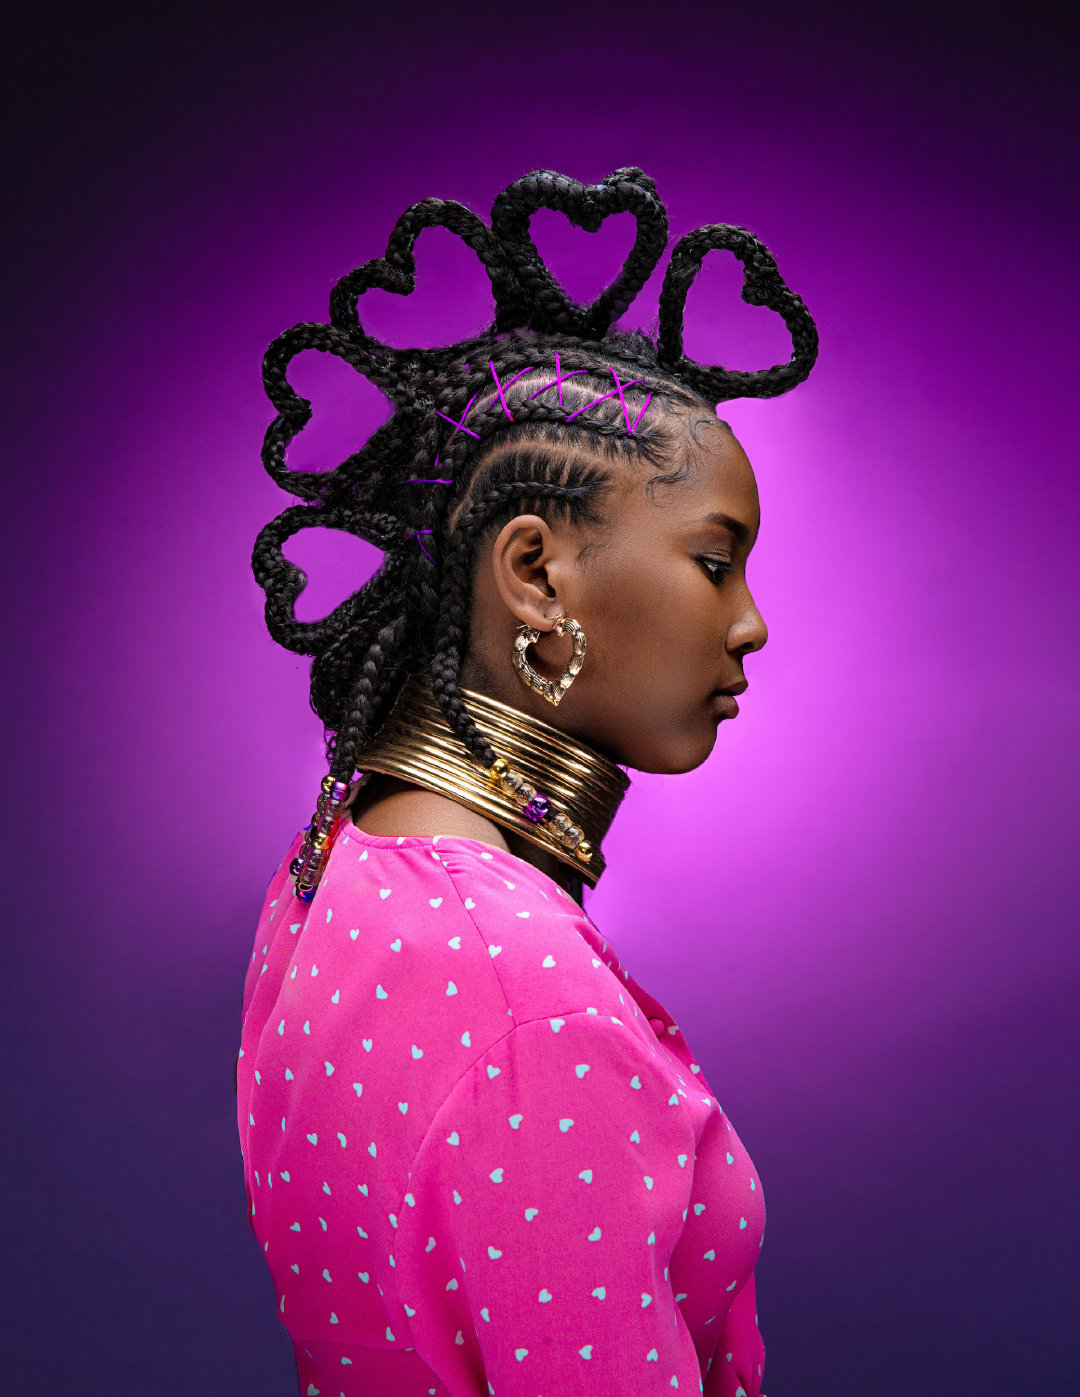 非洲艺术摄影系列挑战年轻黑人模特的审美标准亚特兰大夫妻摄影二人